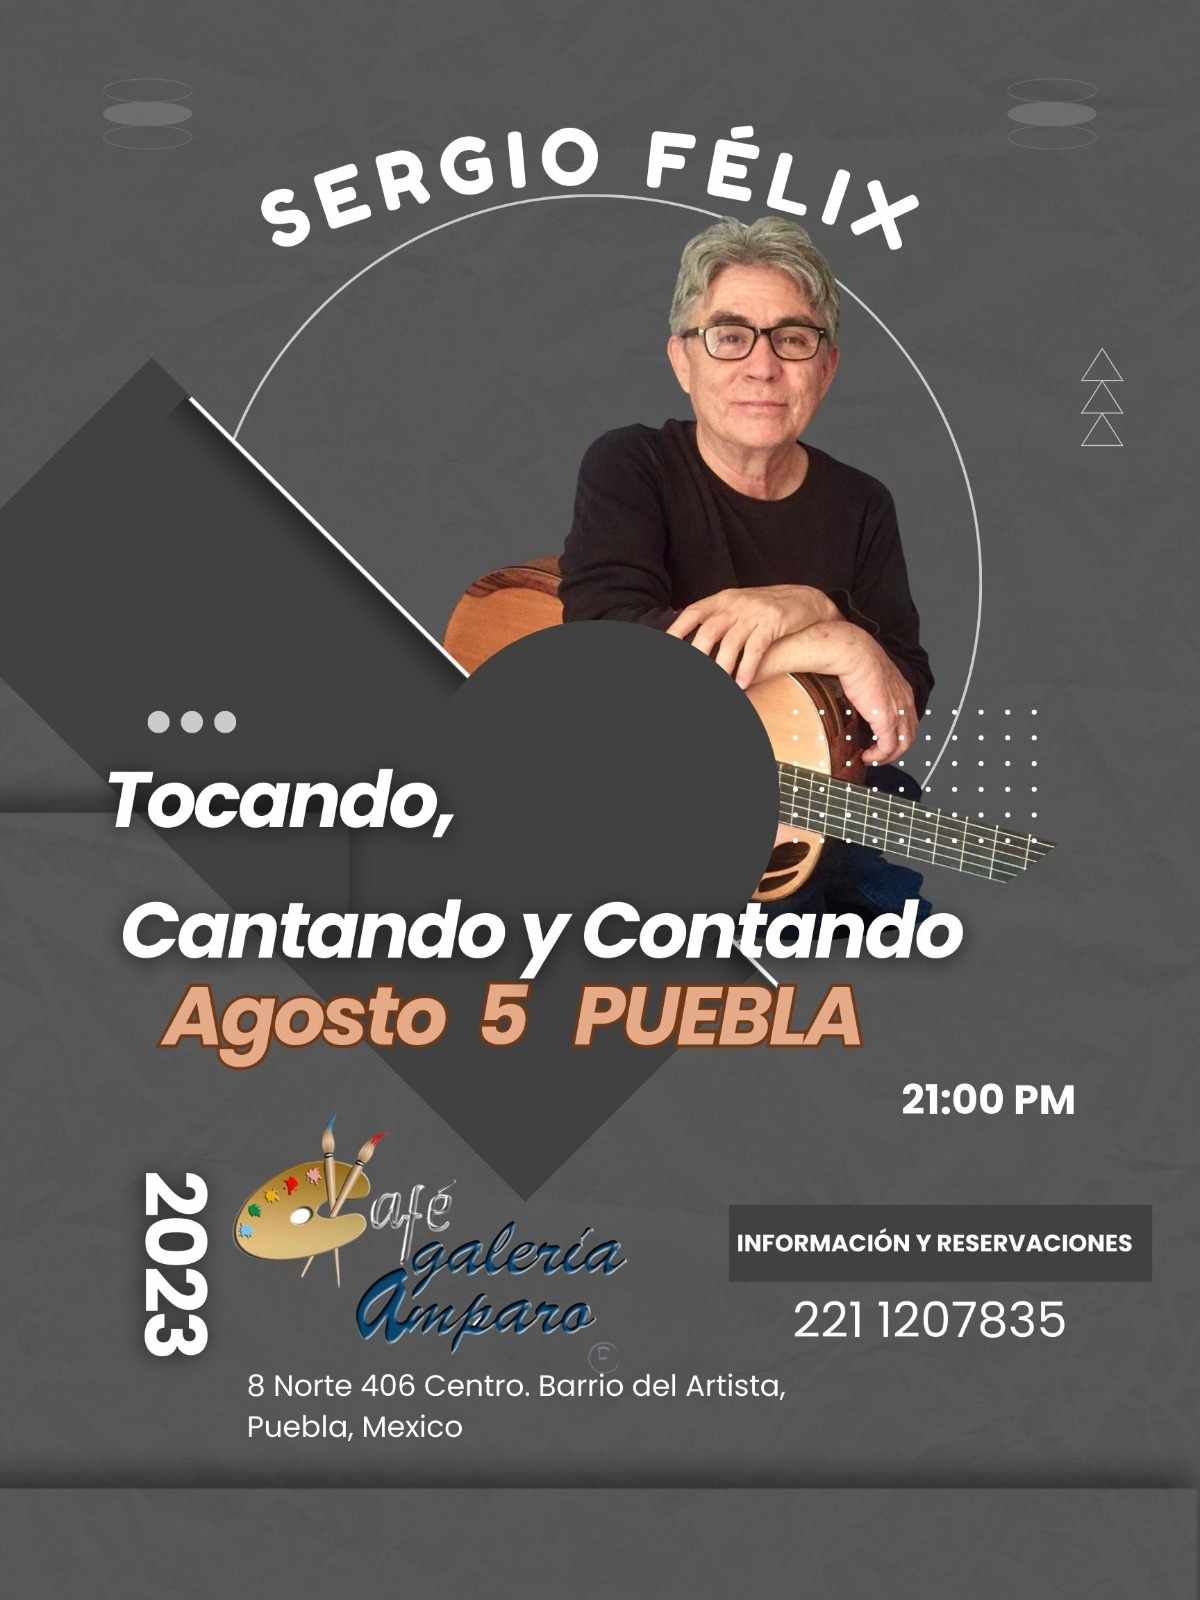 El extraordinario cantante, guitarrista y compositor Sergio Félix se presentará en Puebla con su concierto “Tocando, Cantando y Contando”